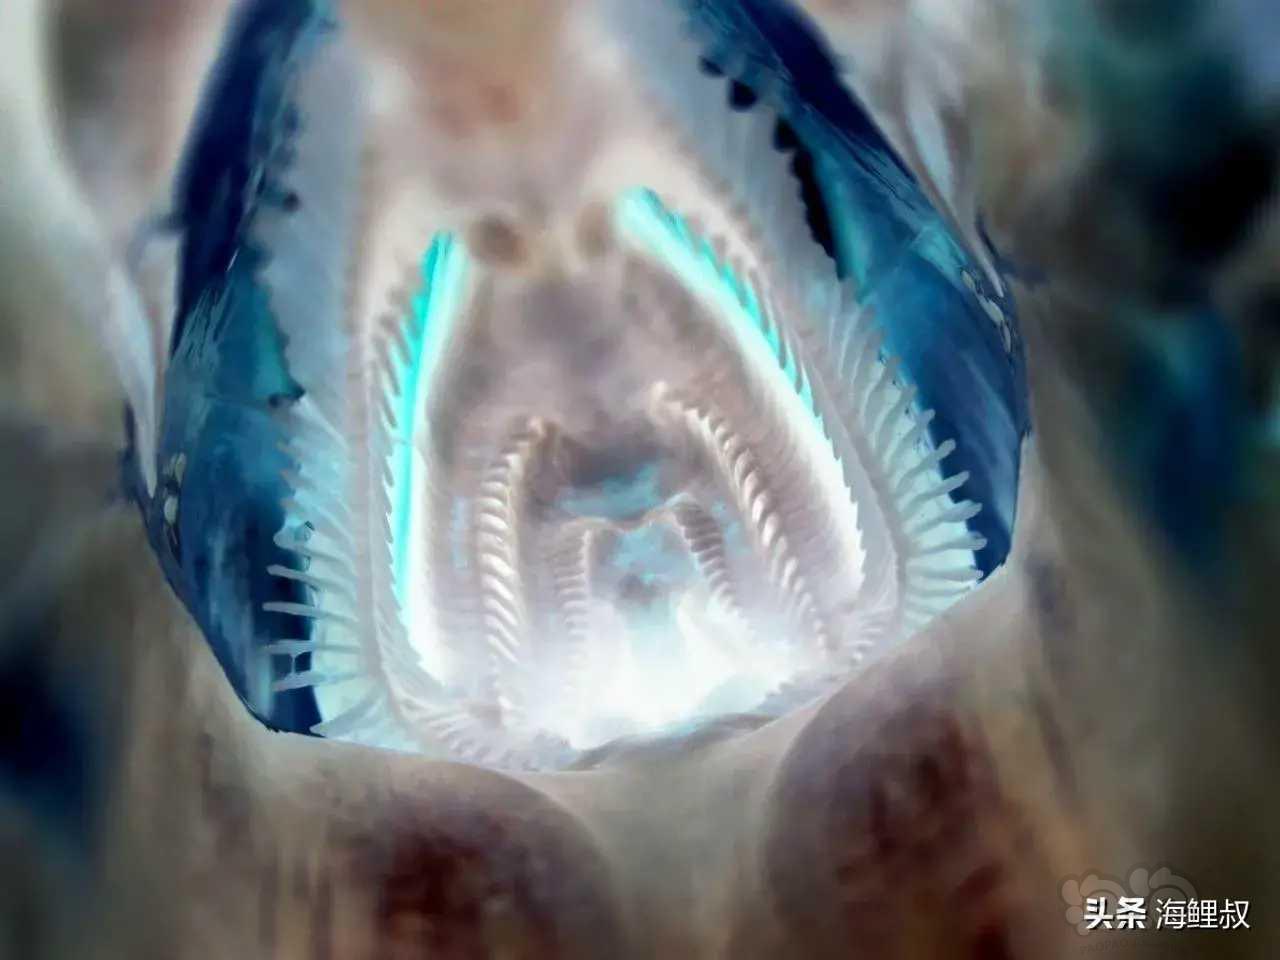 亚成鲣鱼的口腔内拍摄的照片-图1